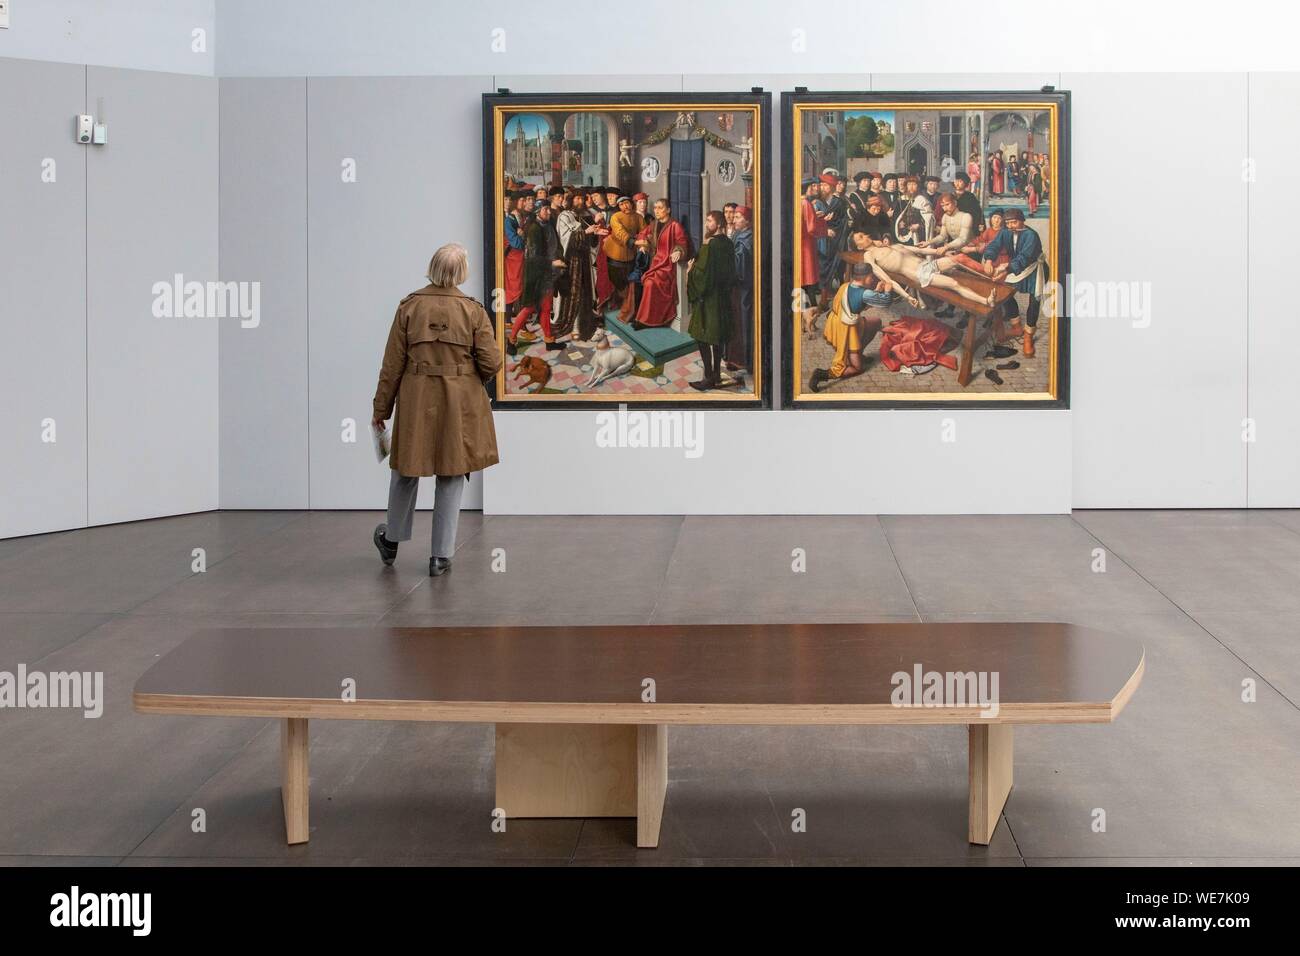 Bélgica, Flandes Occidental, brujas, centro histórico catalogado como Patrimonio Mundial por la UNESCO, Museo Groeninge, óleo sobre panel de Gerard David titulado sentencias de Cambyse (1498) Foto de stock